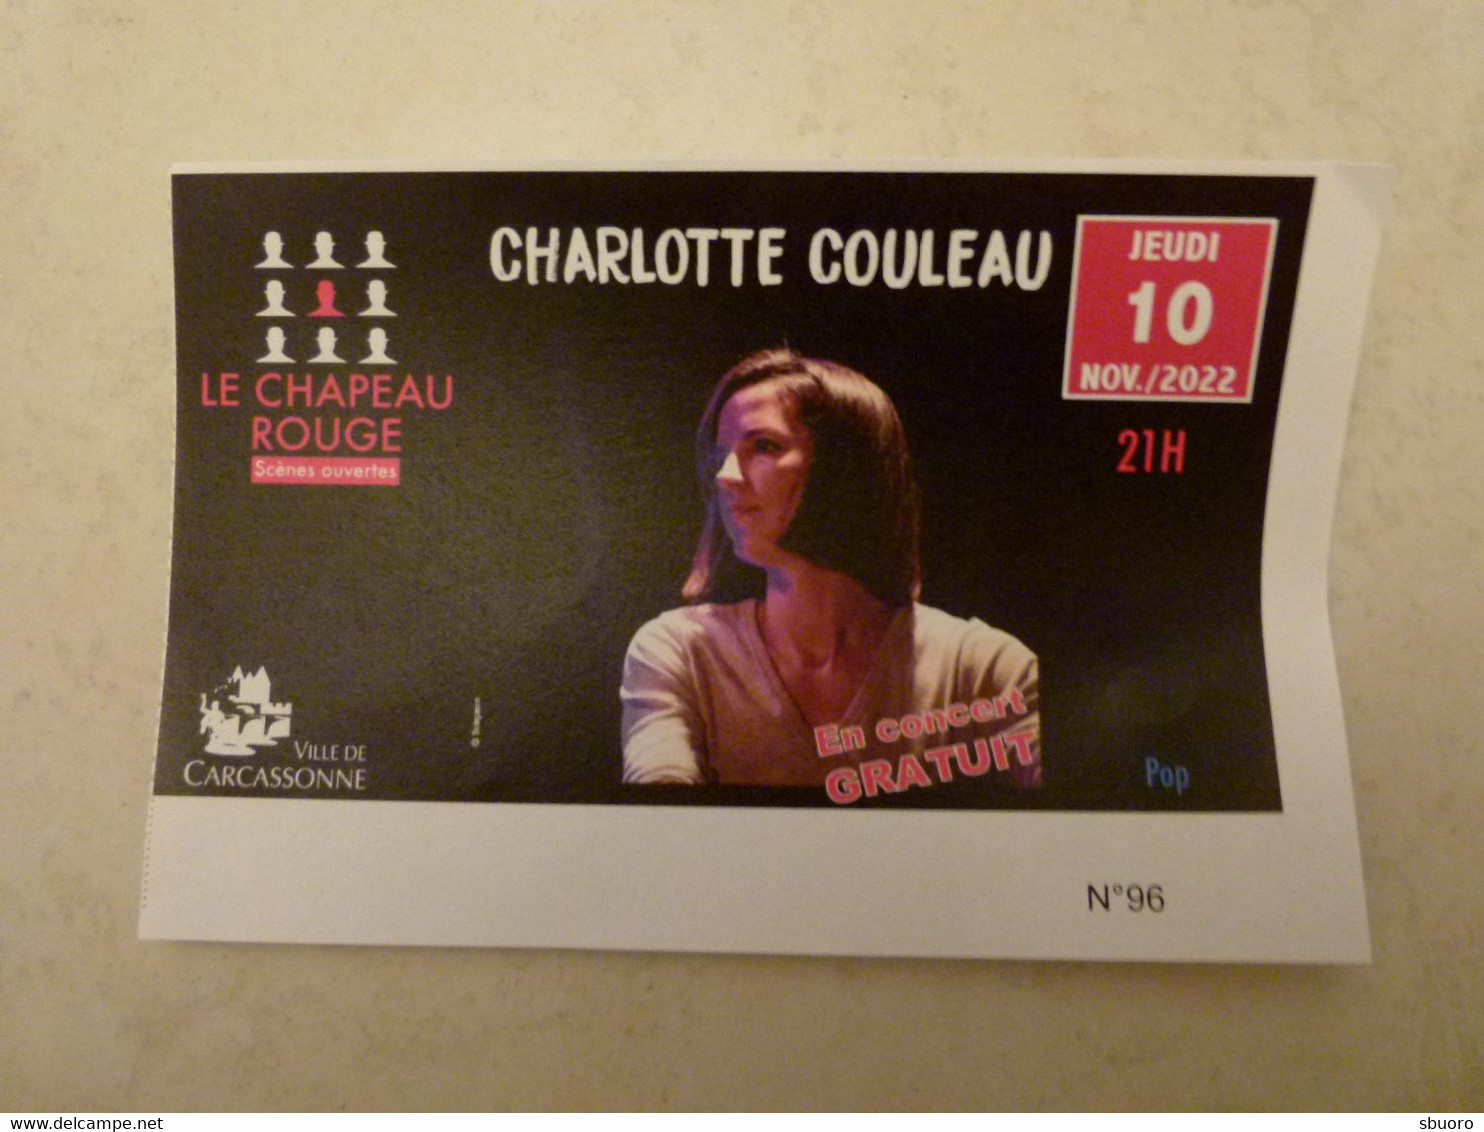 Charlotte Couleau, Chant Et Piano - 10 Novembre 2022 - Carcassonne (Aude) - Le Chapeau Rouge, Scènes Ouvertes. Daran - Concert Tickets